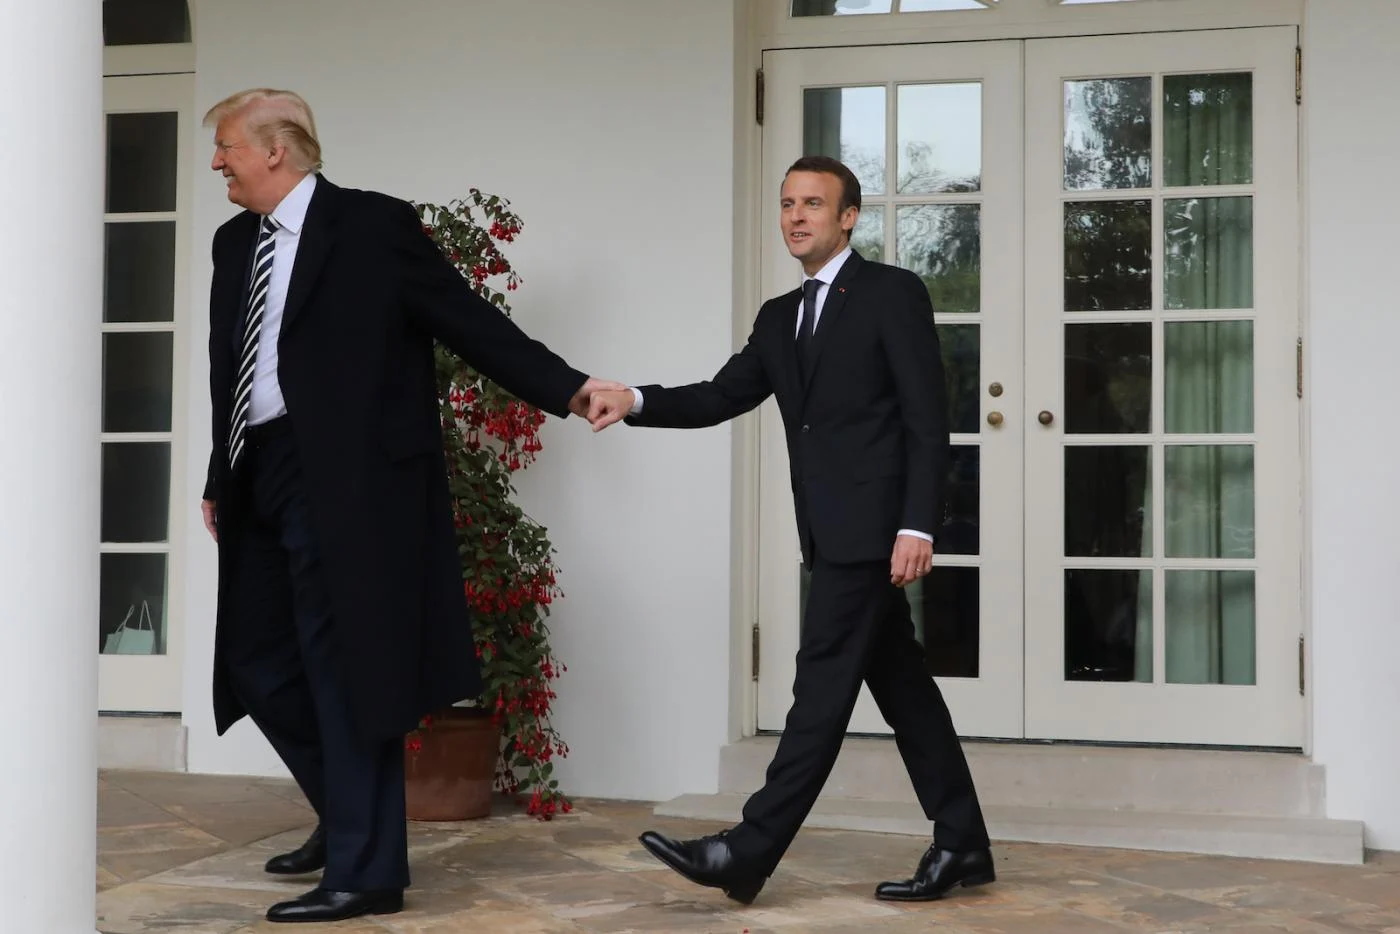 Celebridades: Os hábitos sexuais ‘marotos’ de Emmanuel Macron, Donald Trump afirma ter informações